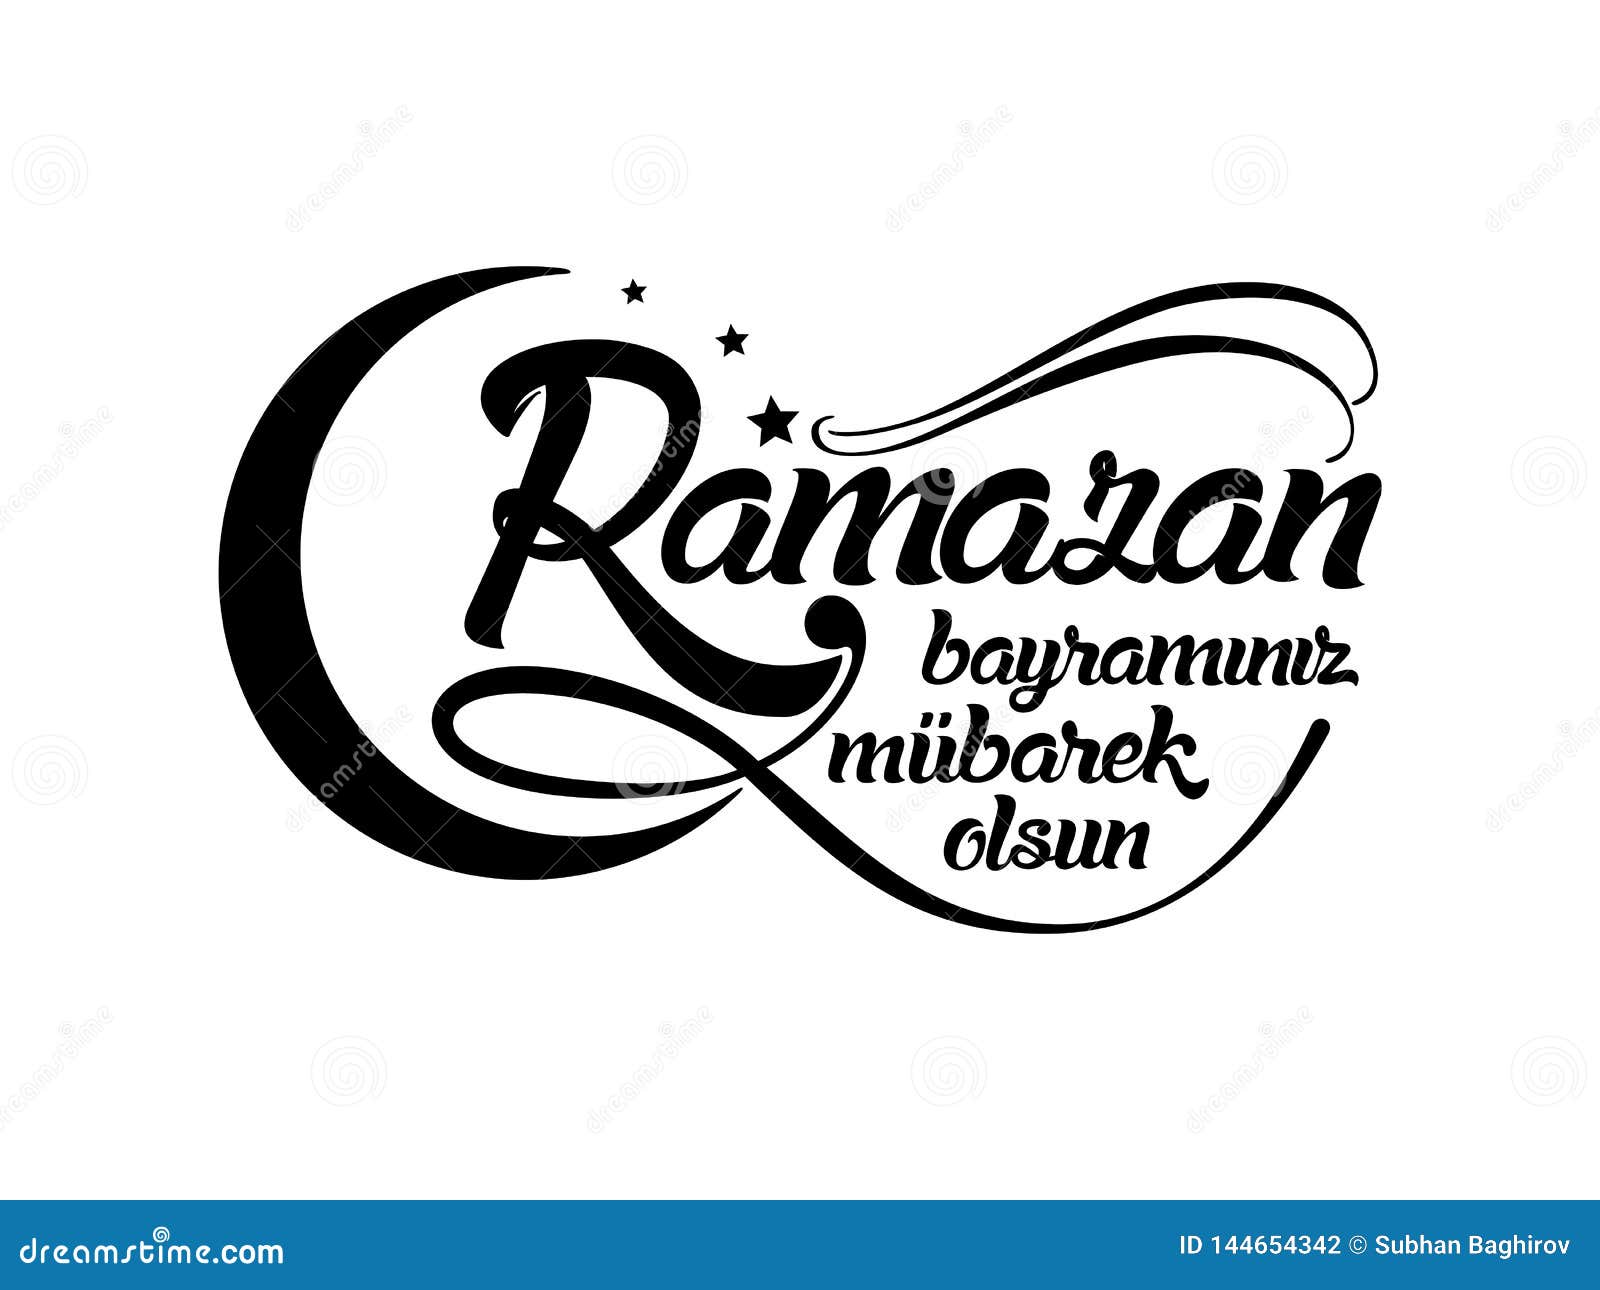 ramazan bayraminiz mubarek olsun. translation from turkish: happy ramadan